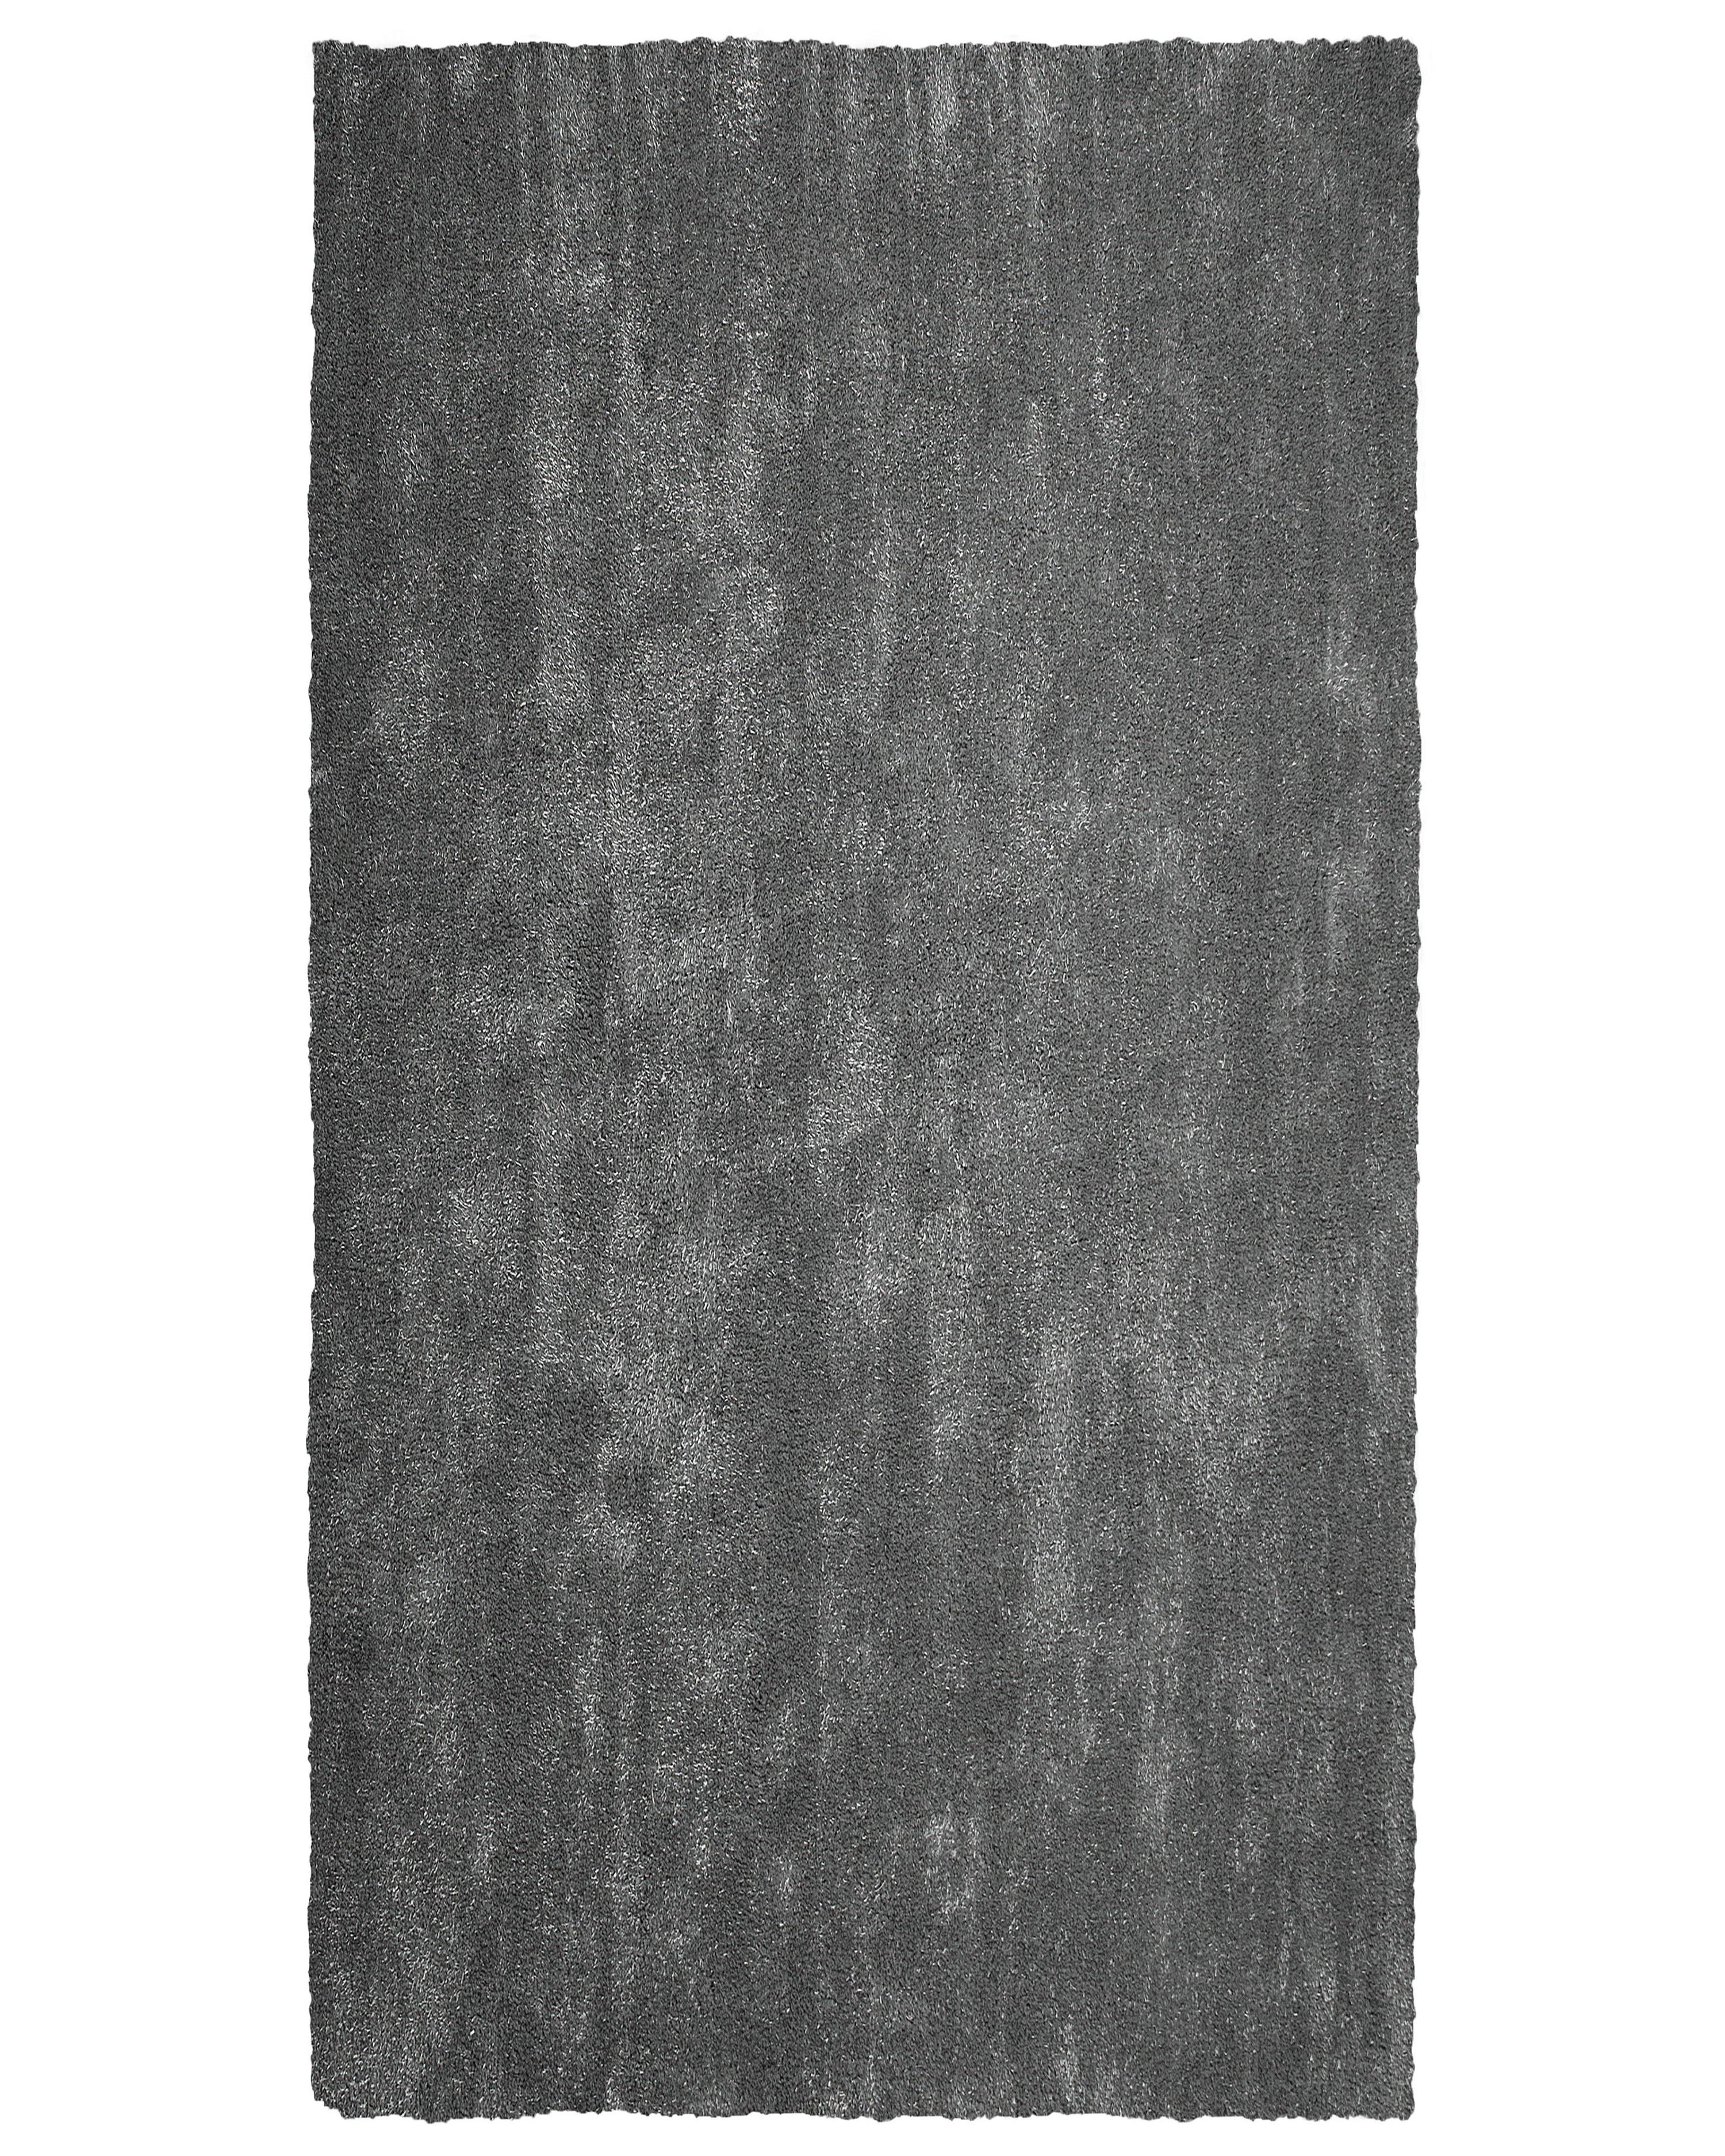 Tapis gris foncé 80 x 150 cm DEMRE_683465